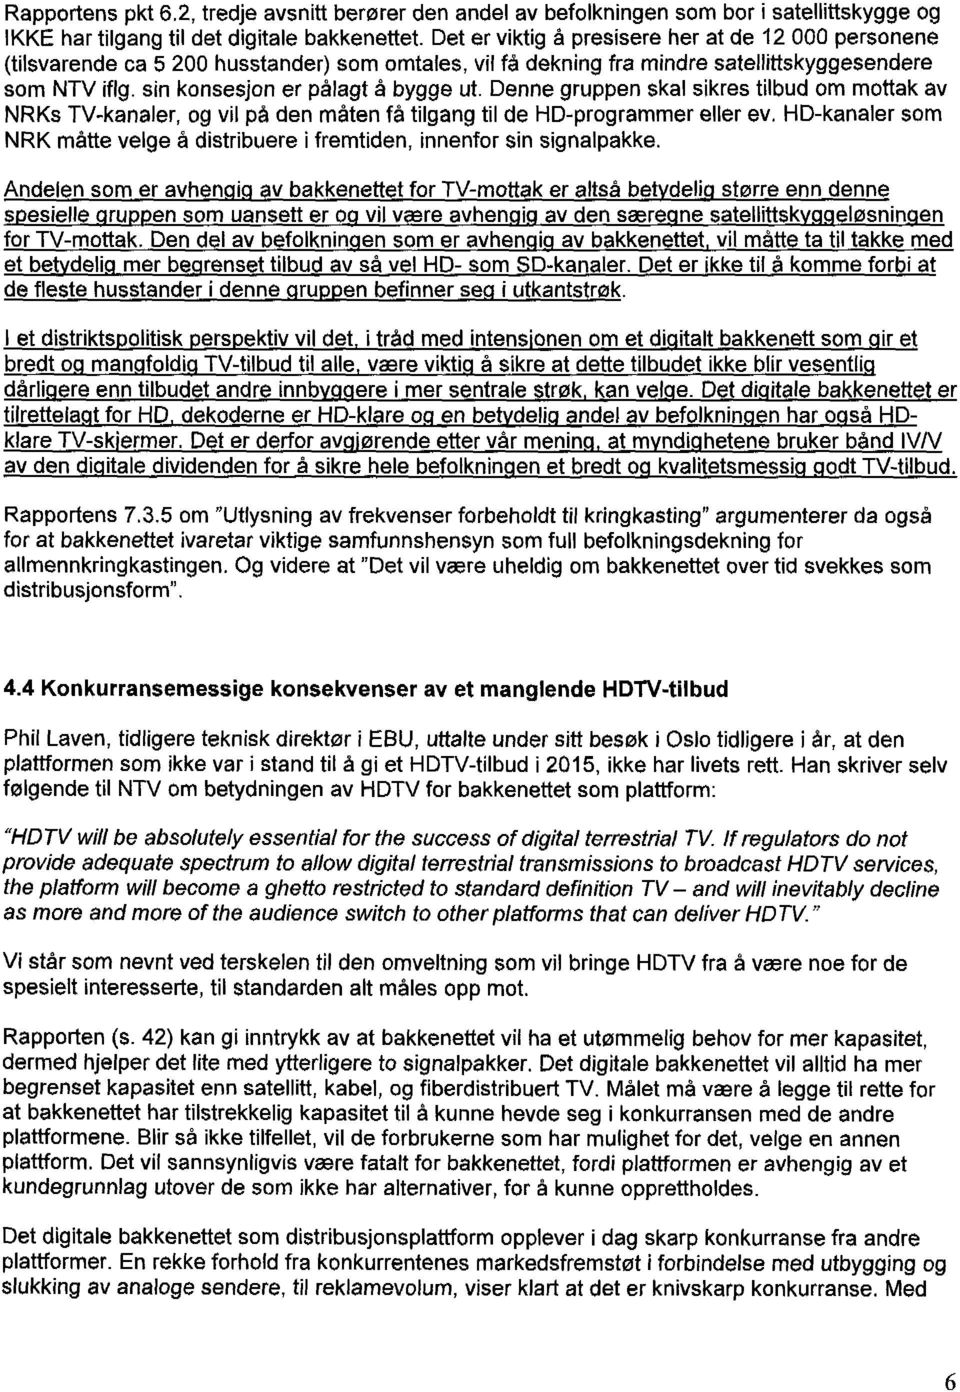 Denne gruppen skal sikres tilbud om mottak av NRKs TV-kanaler, og vil på den måten få tilgang til de HD-programmer eller ev.